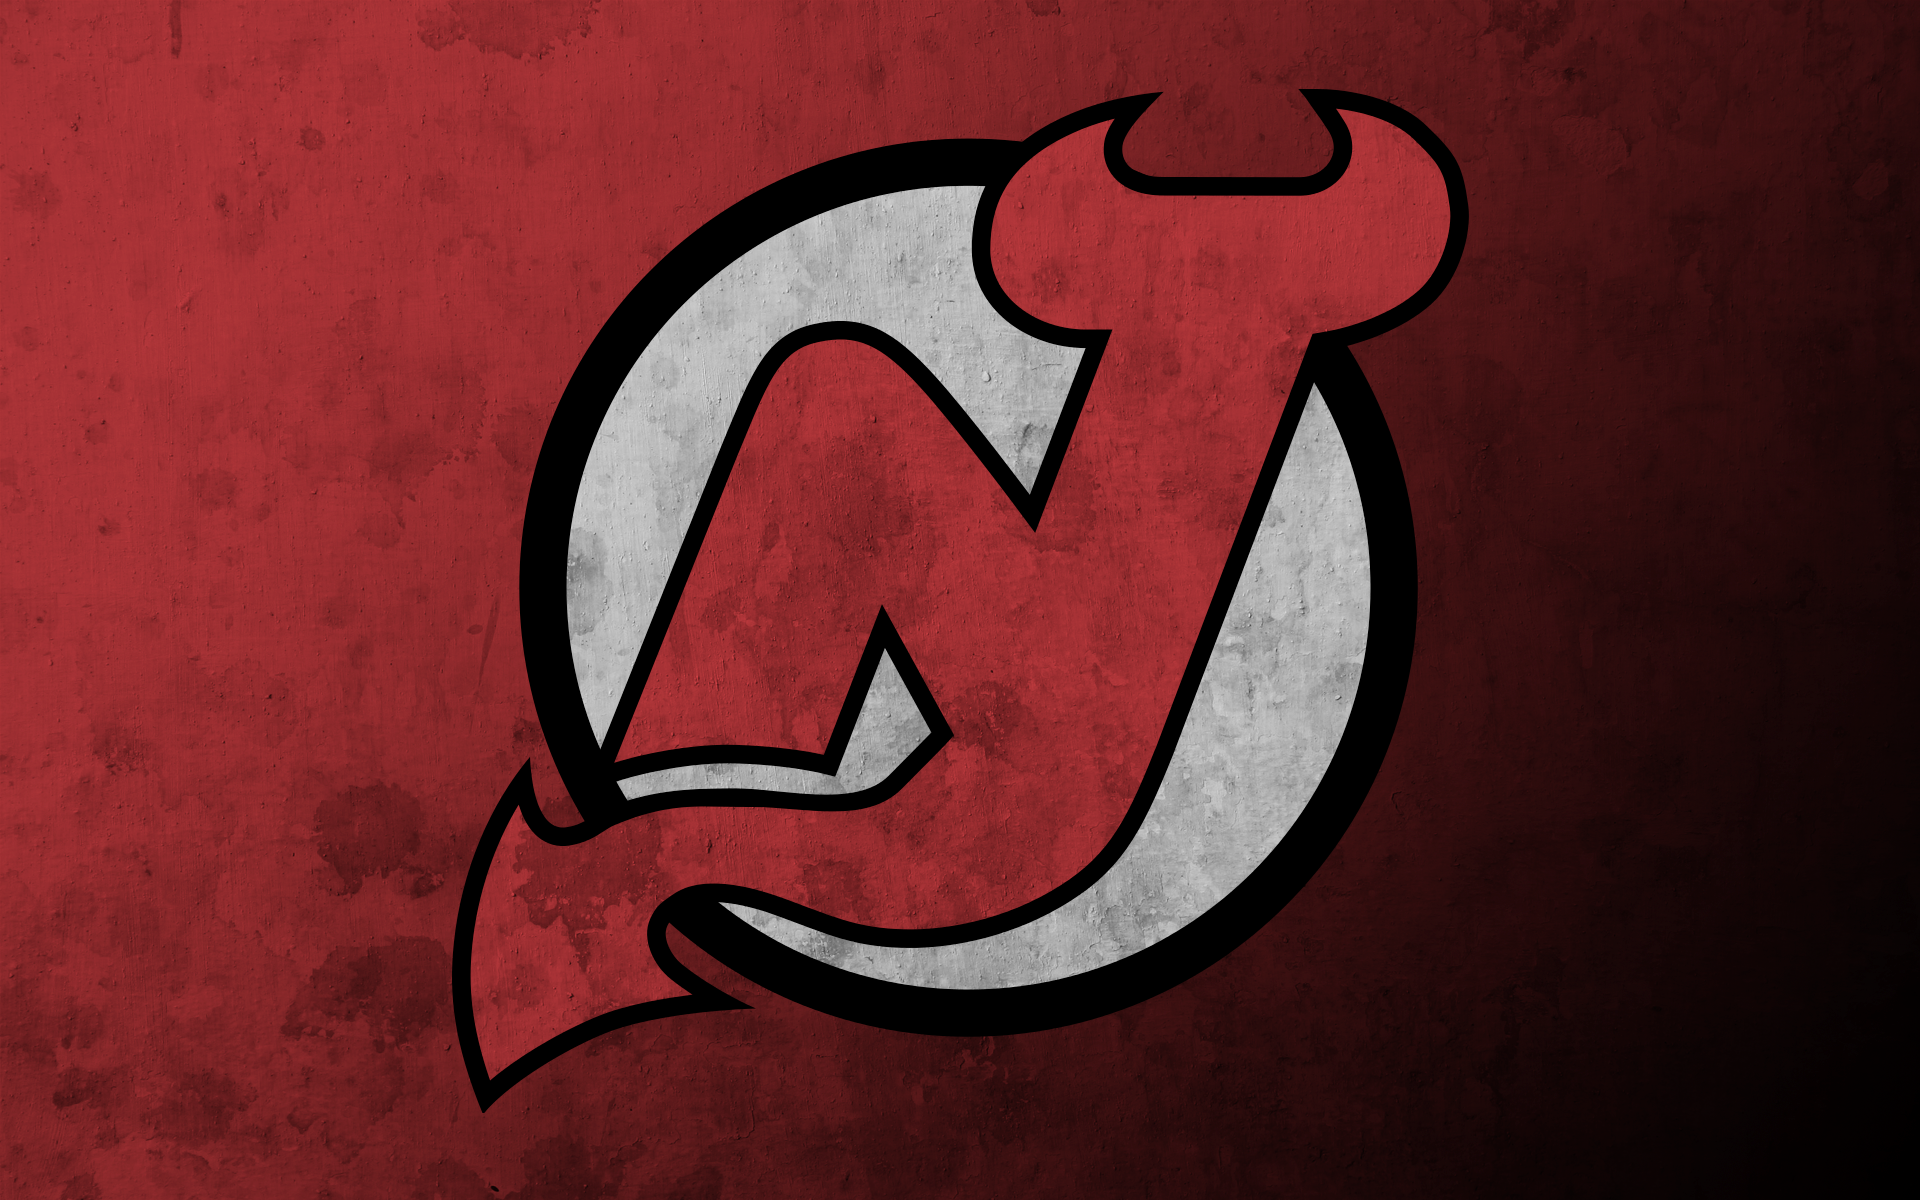 New jersey devils. Нью джерси Дэвилз. Эмблема Нью джерси Дэвилз. Хоккейный клуб Нью-джерси Девилз. New Jersey Devils логотип.